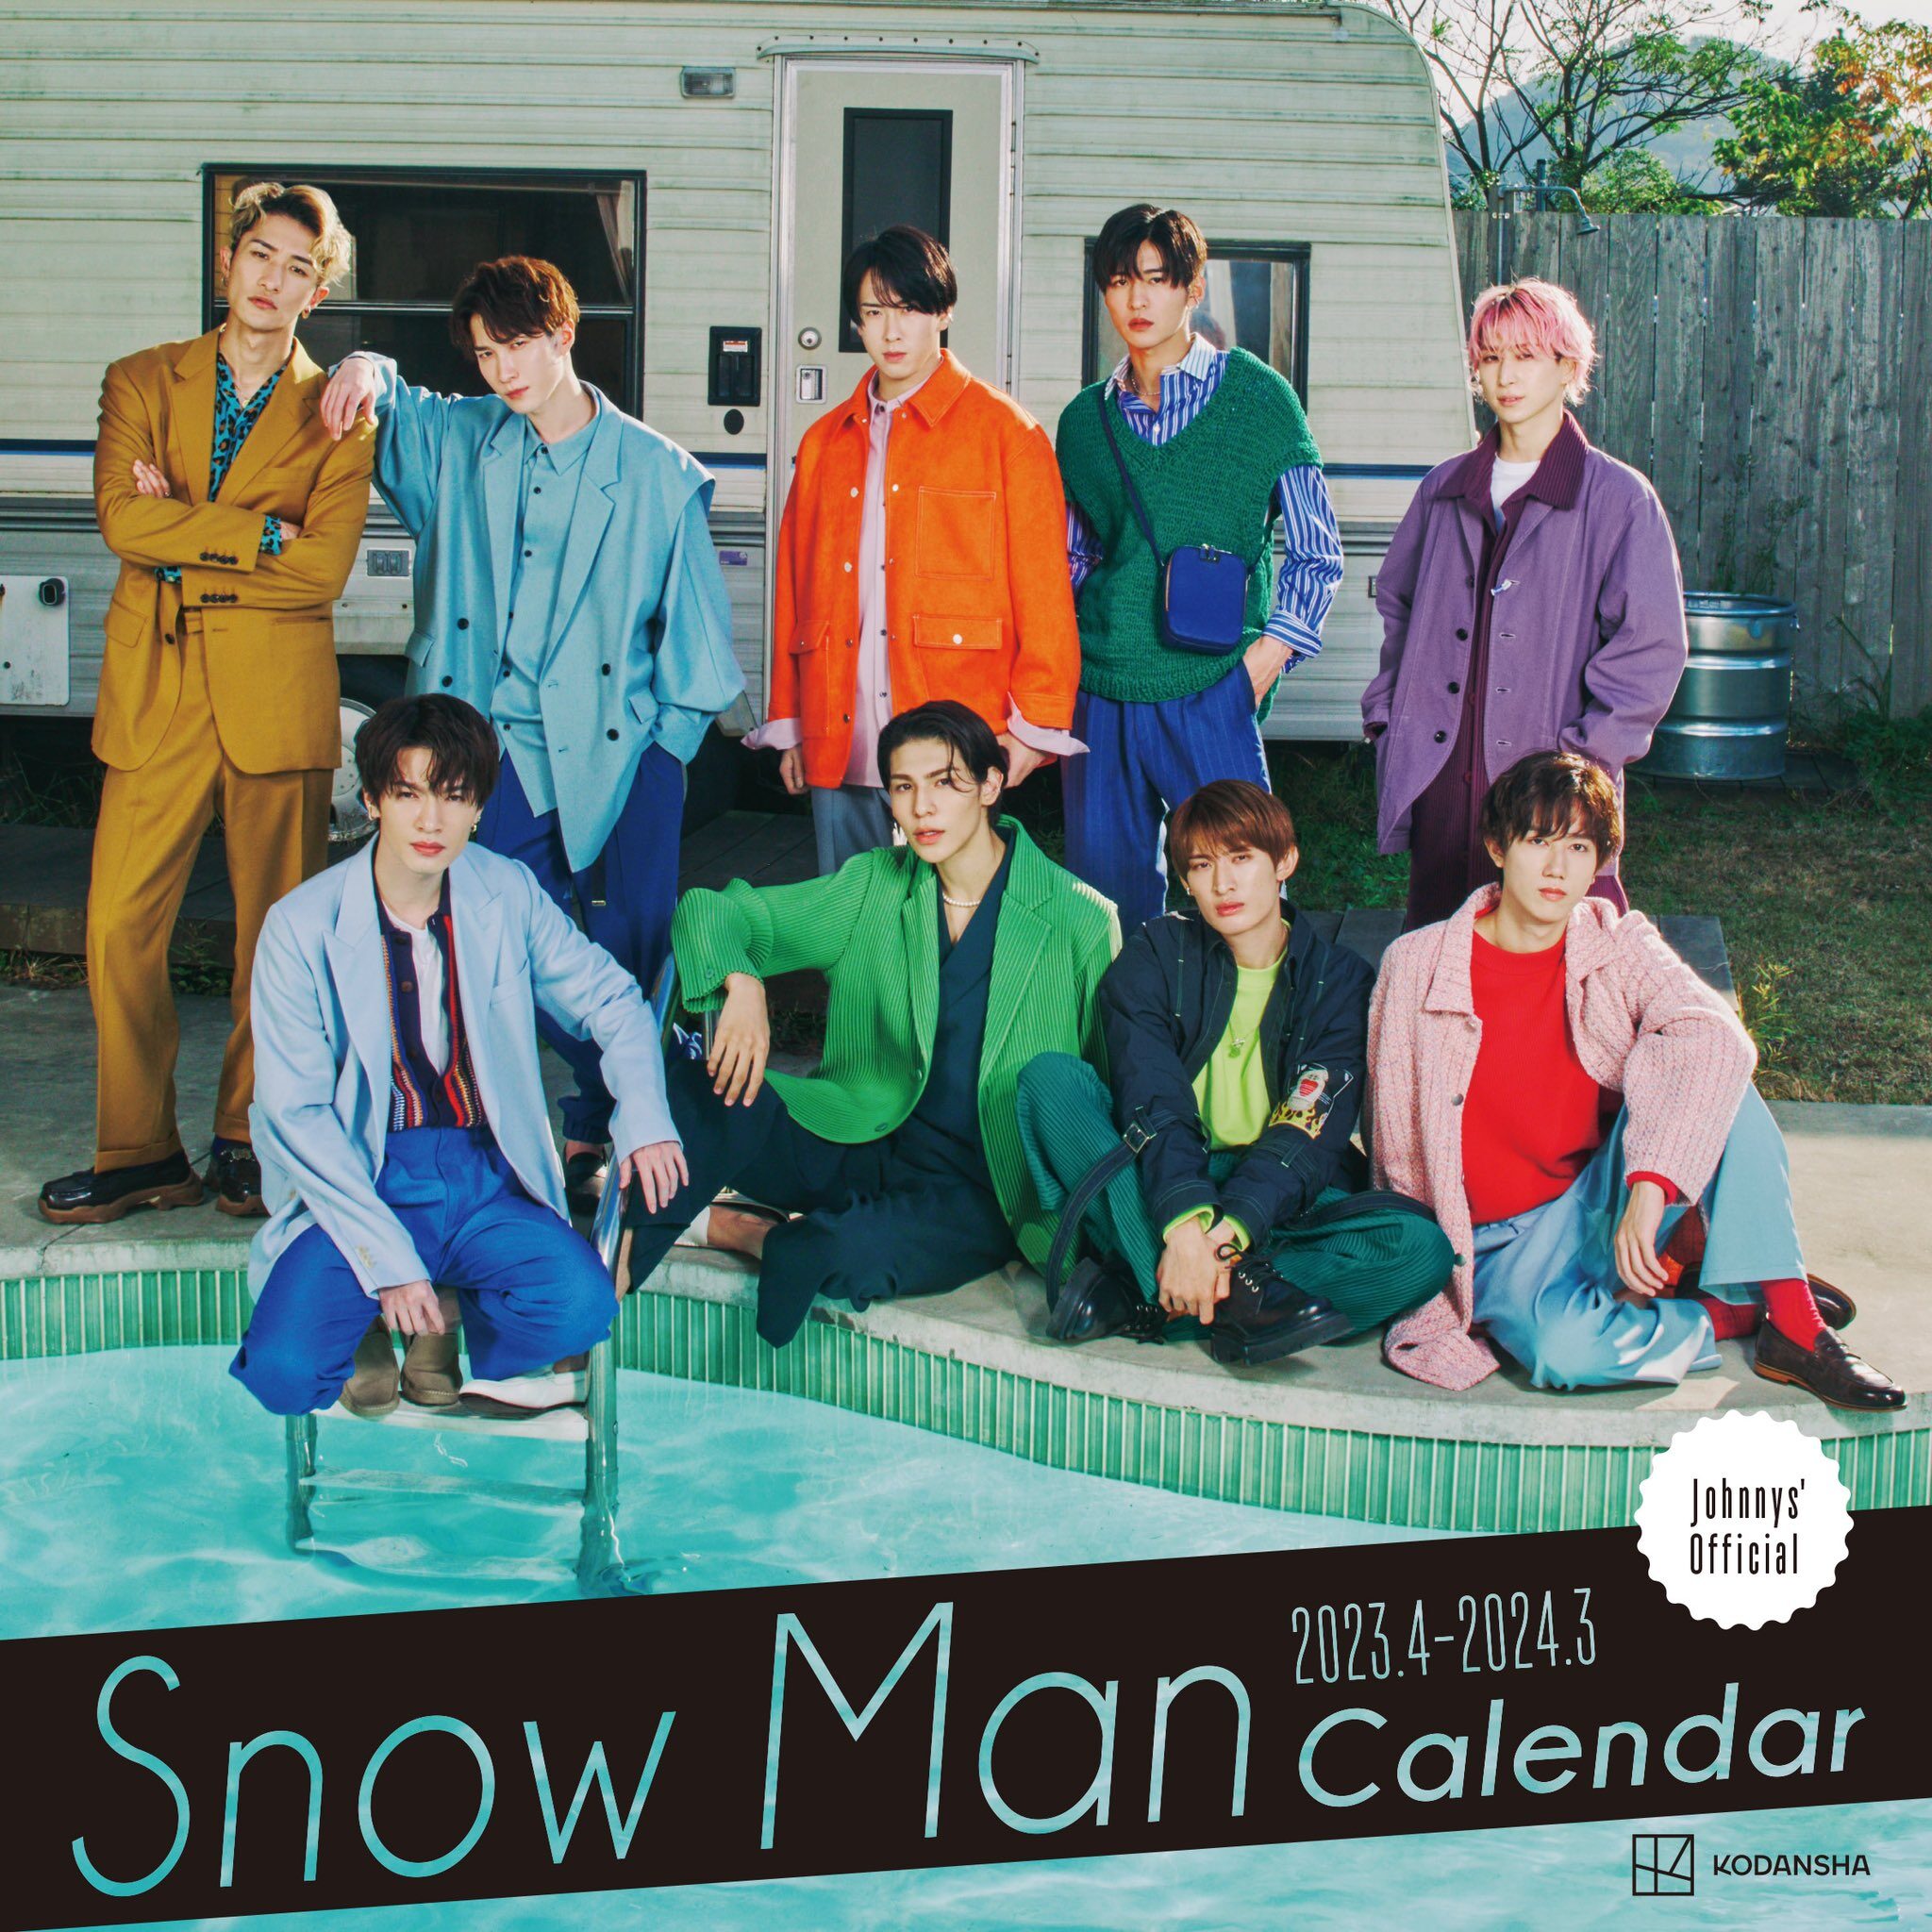 Snow Man 2023.4-2024.3 オフィシャルカレンダー 2023年3月9日発売決定